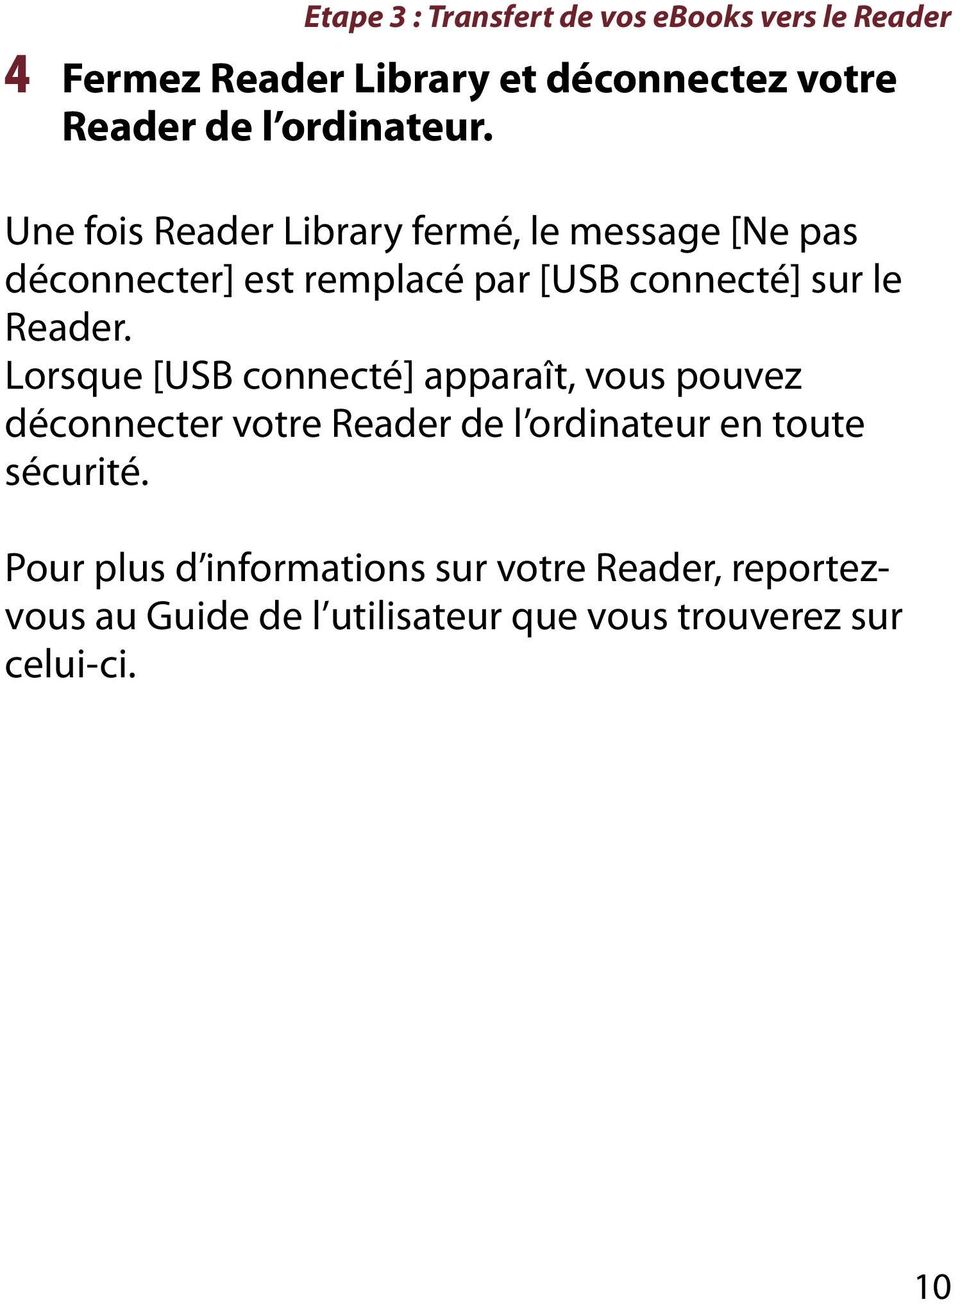 Une fois Reader Library fermé, le message [Ne pas déconnecter] est remplacé par [USB connecté] sur le Reader.